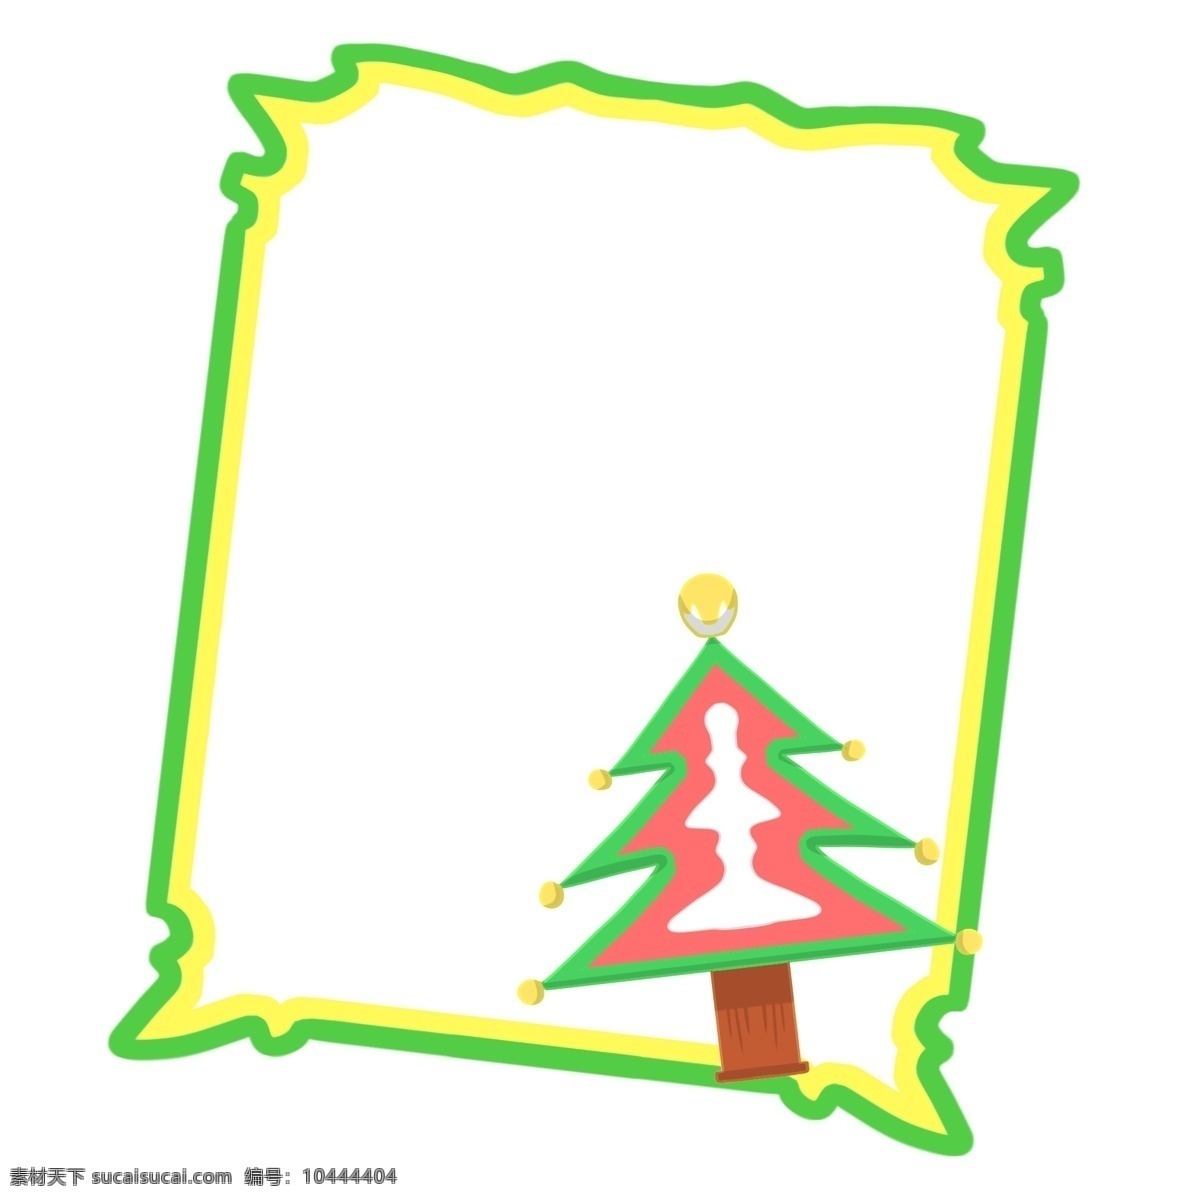 手绘 圣诞树 边框 插画 松树 绿色边框 手绘边框 圣诞树边框 黄色边框 圣诞边框